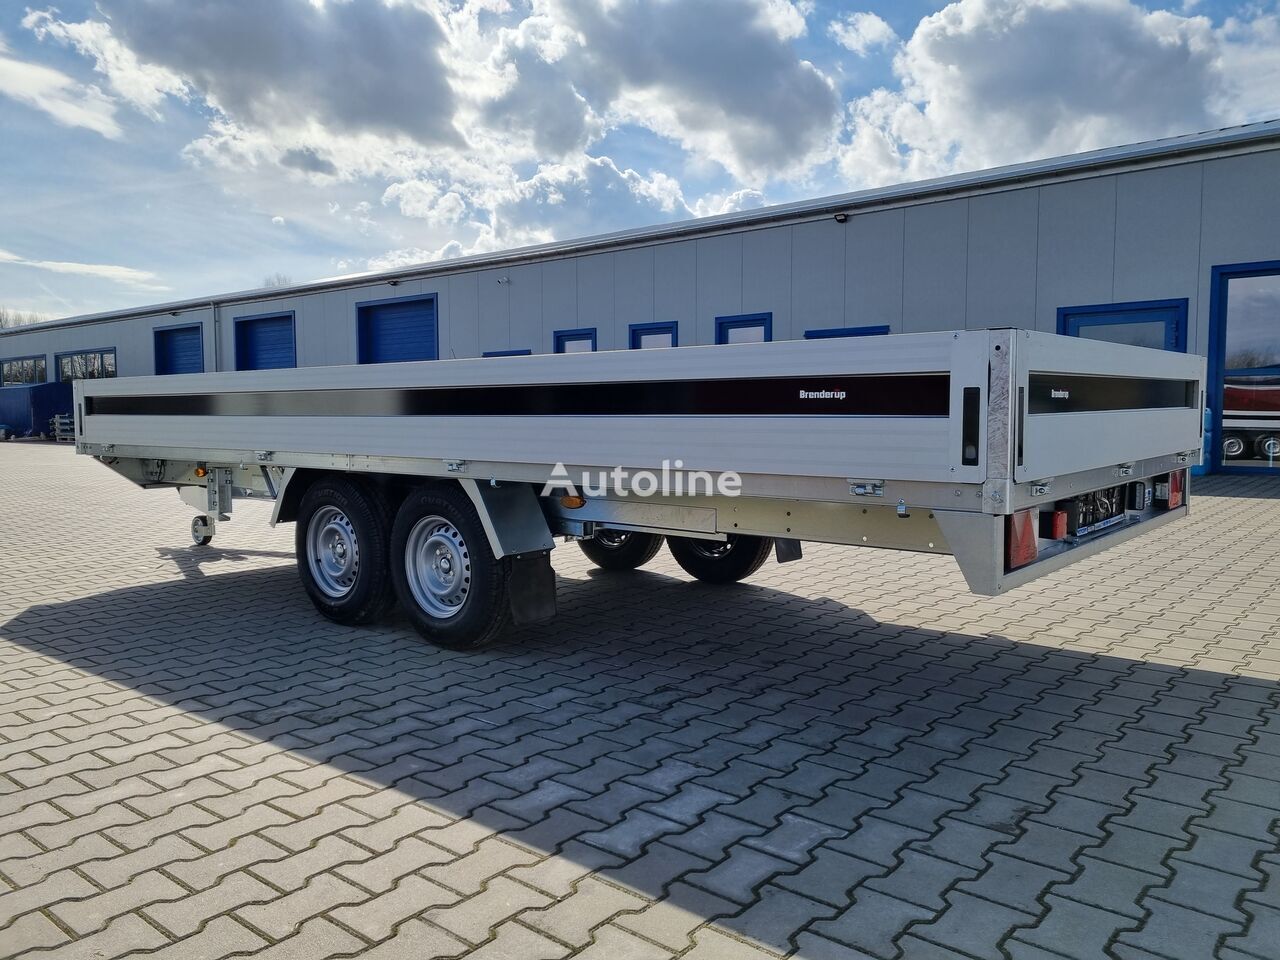 Nowy Przyczepa platforma/ Skrzyniowa Brenderup 5520 WATB 3,5T GVW 517x204 cm 5m long trailer platform: zdjęcie 8